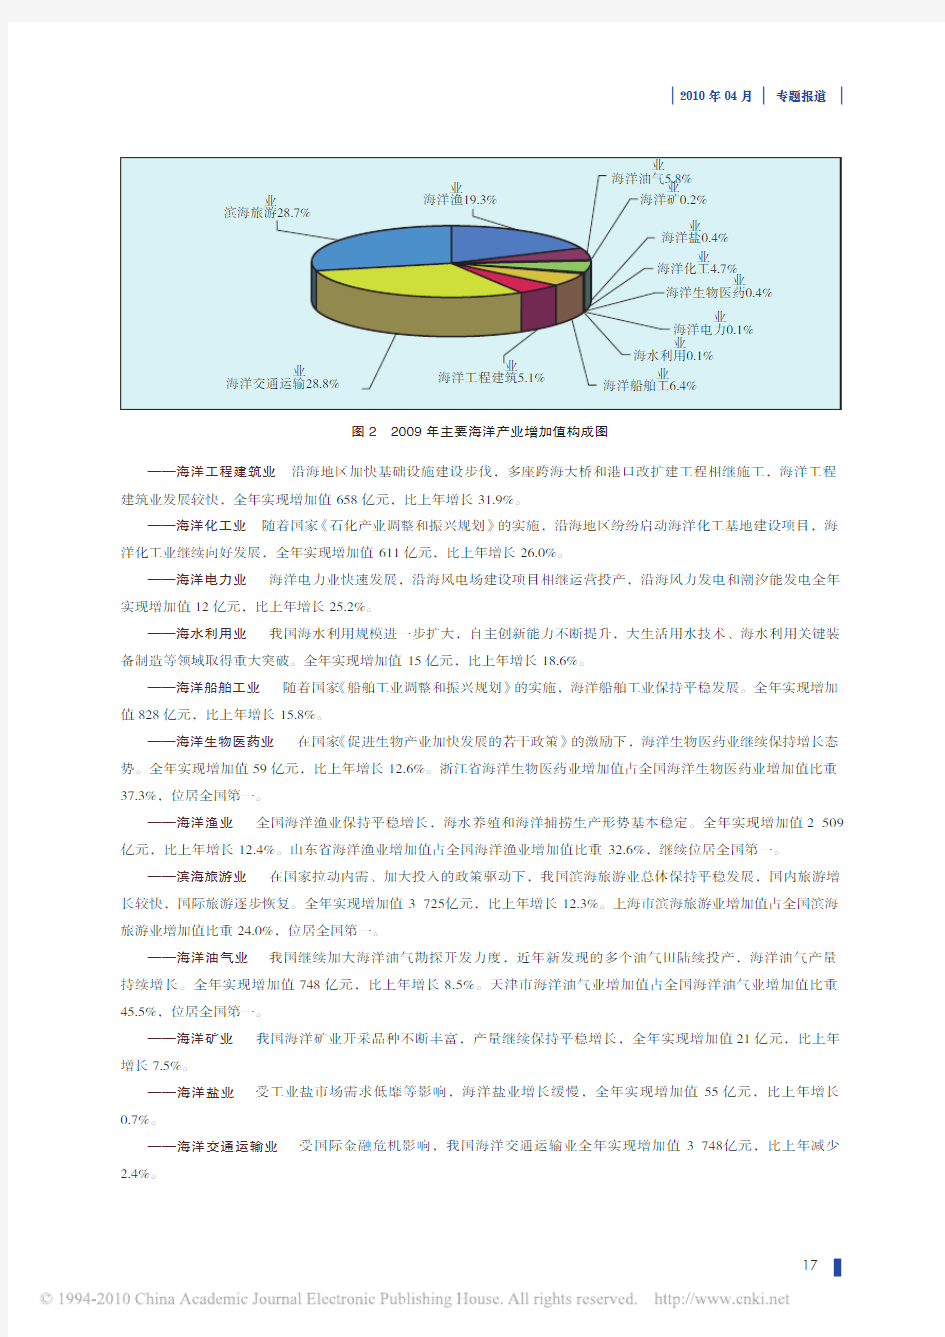 《2009年中国海洋经济统计公报》